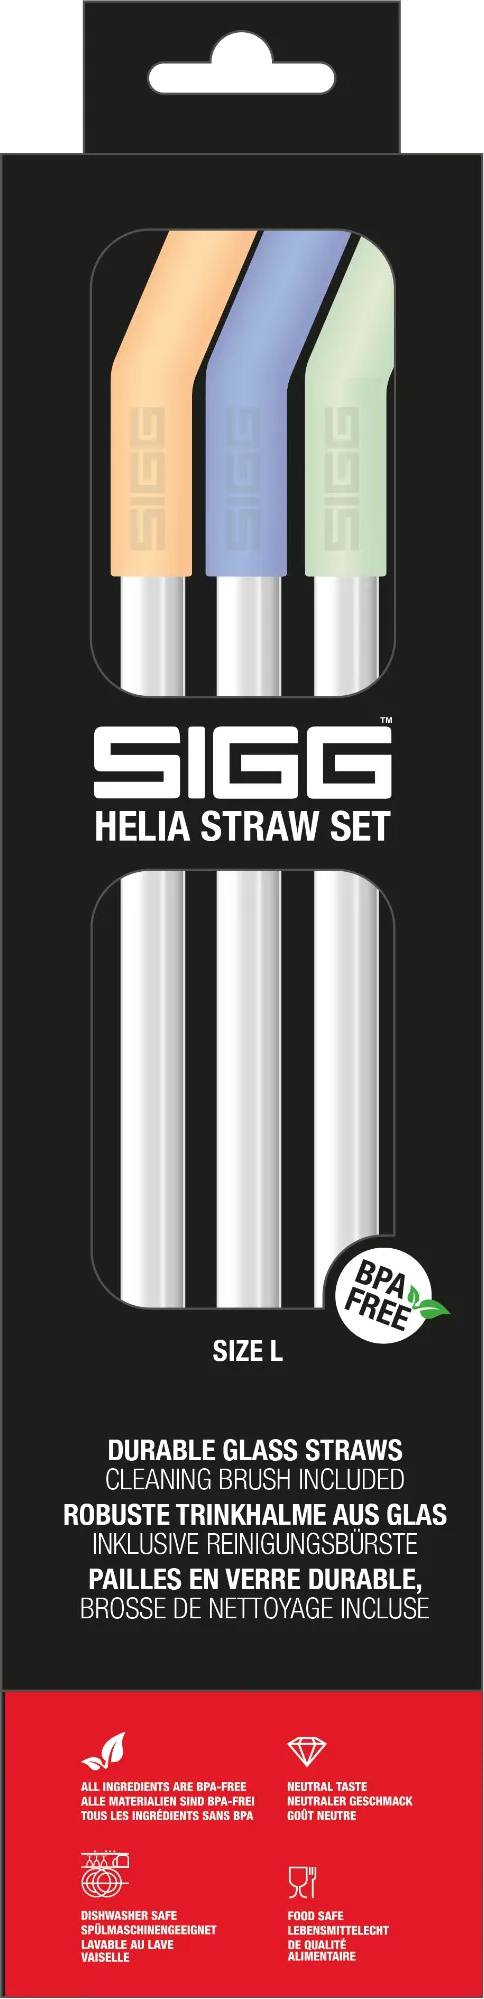 Sigg Helia Straw L Day